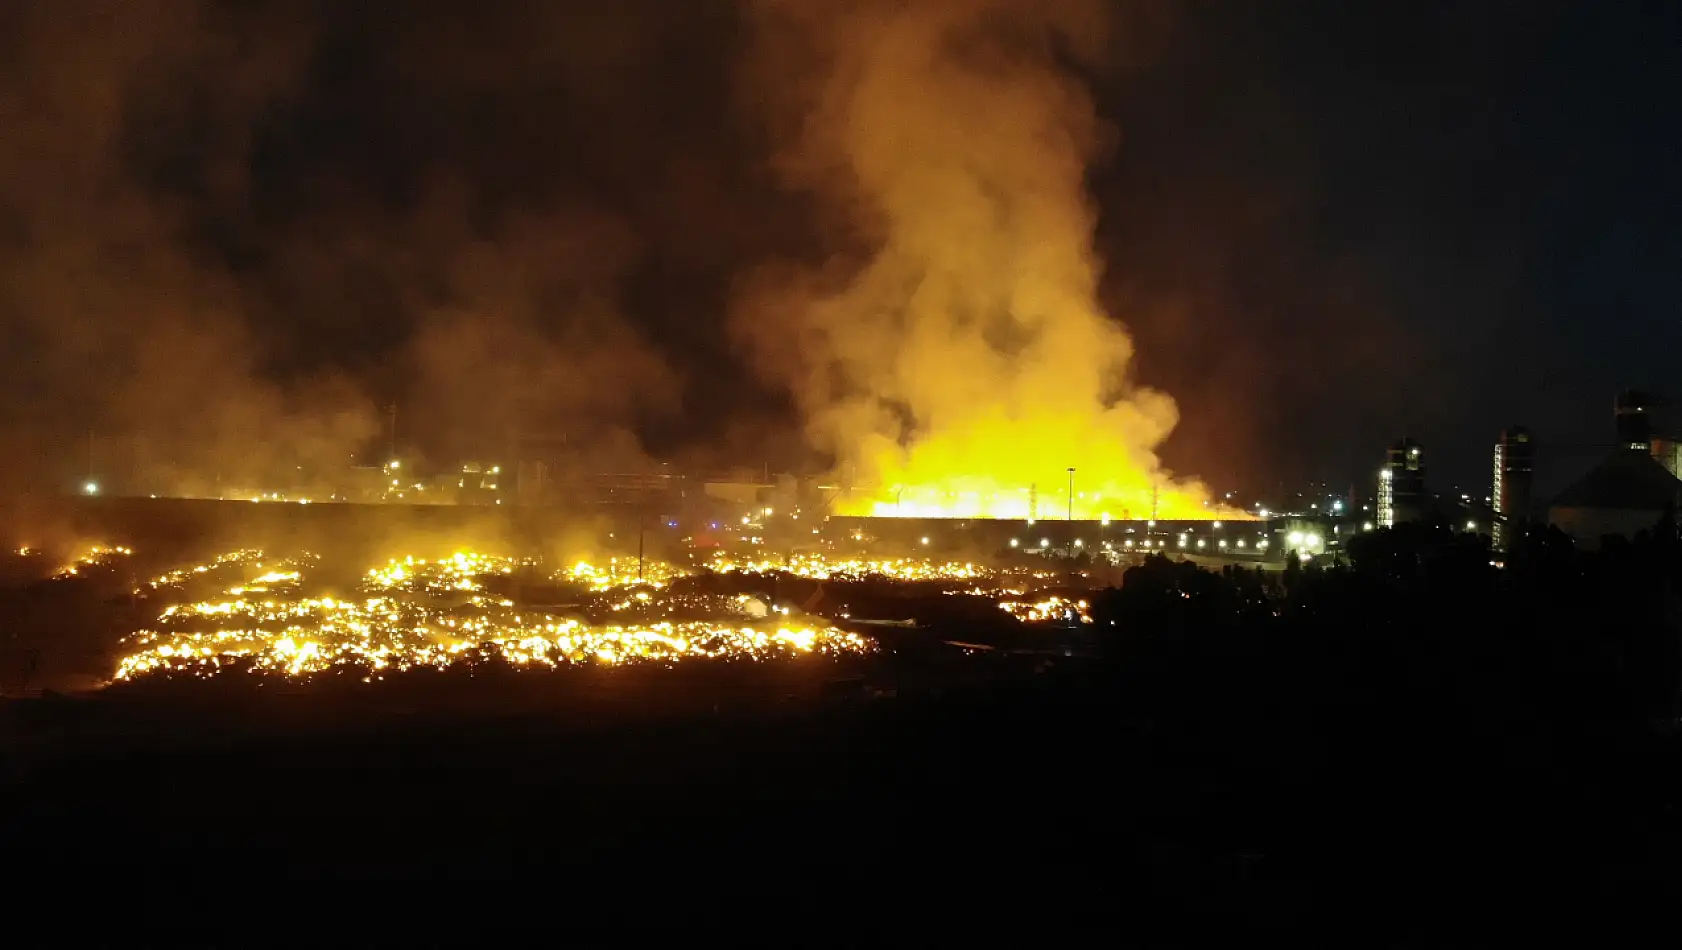 Aydın'da Kağıt Fabrikasında Başlayan Yangın 100 Bin Metrekare Alana Yayıldı! Kente Kül Yağdı